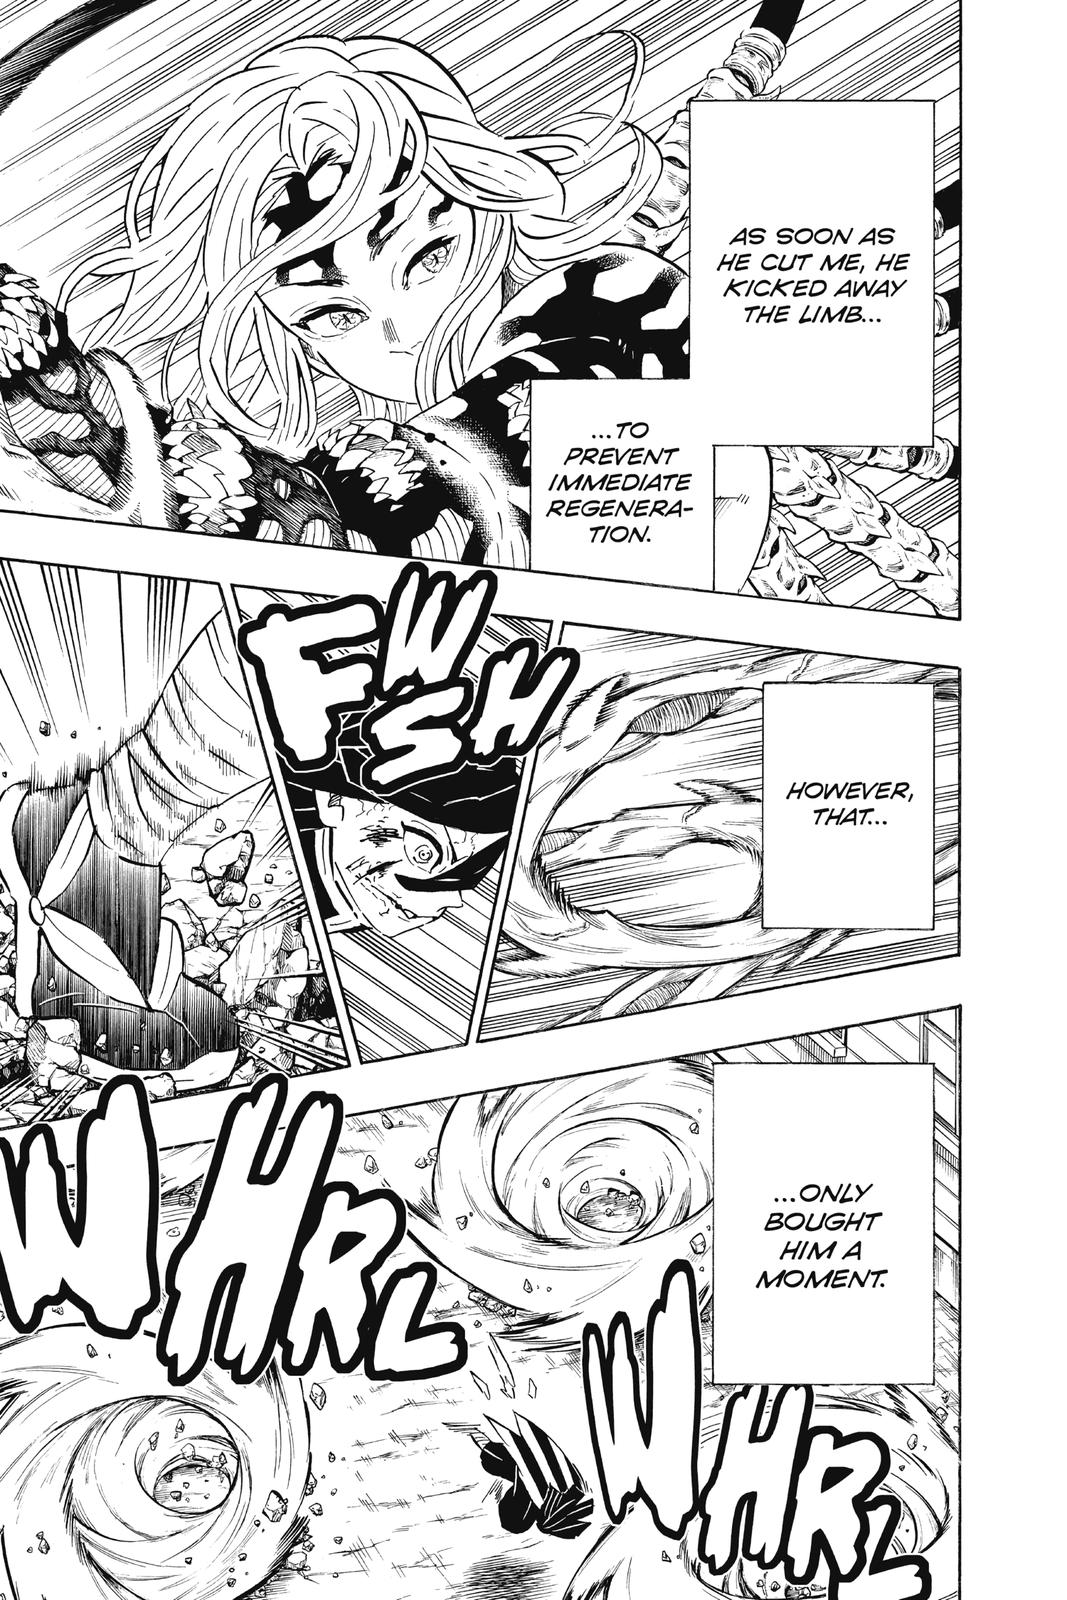 Demon Slayer Manga Manga Chapter - 189 - image 5